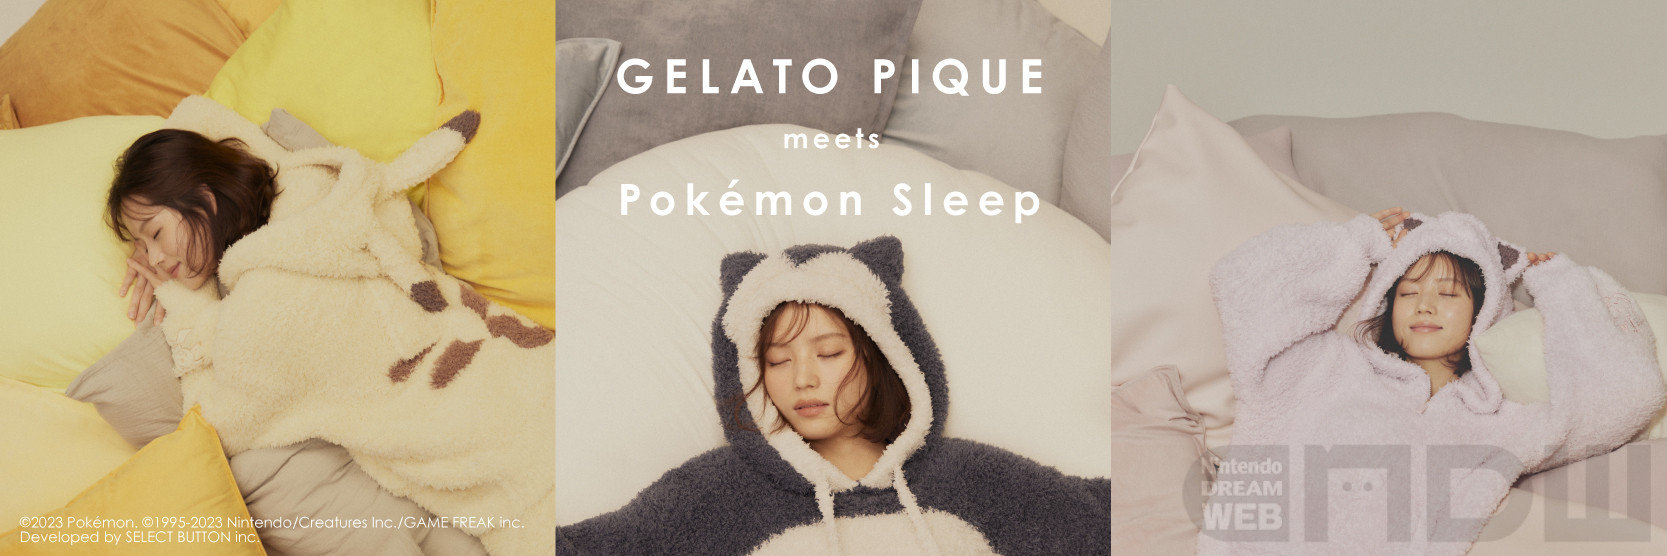 9月28日(木)正午発売『Pokémon Sleep』と「ジェラート ピケ」の